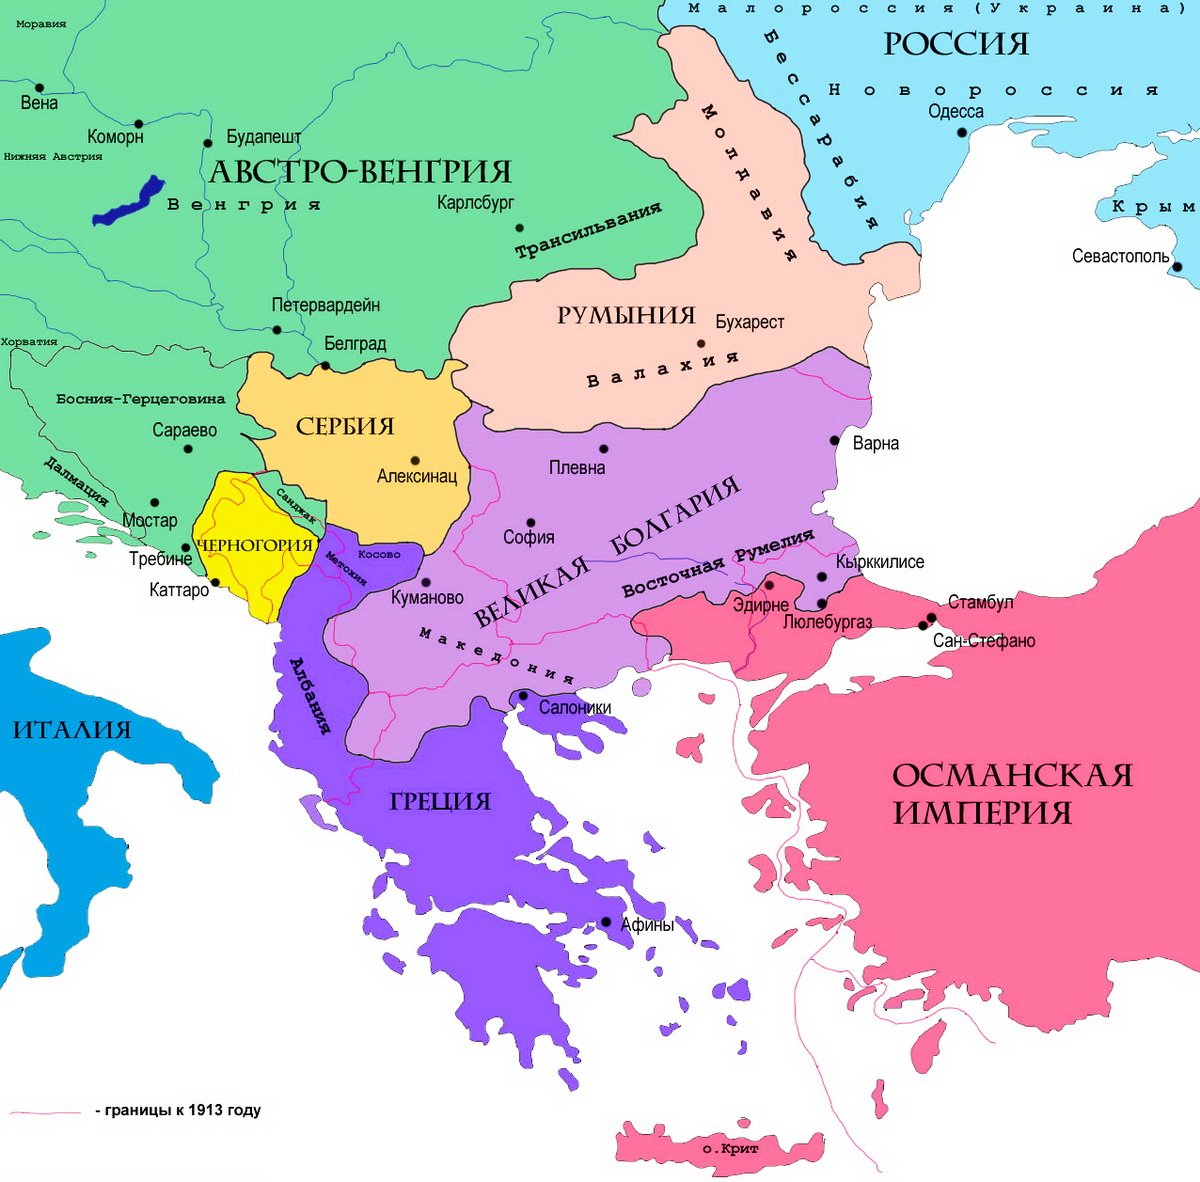 В 1912-13 годах Болгария была главным оплотом балканских государств, заключивших союз в борьбе против Османской империи за освобождение порабощённых «братьев» в Македонии. 